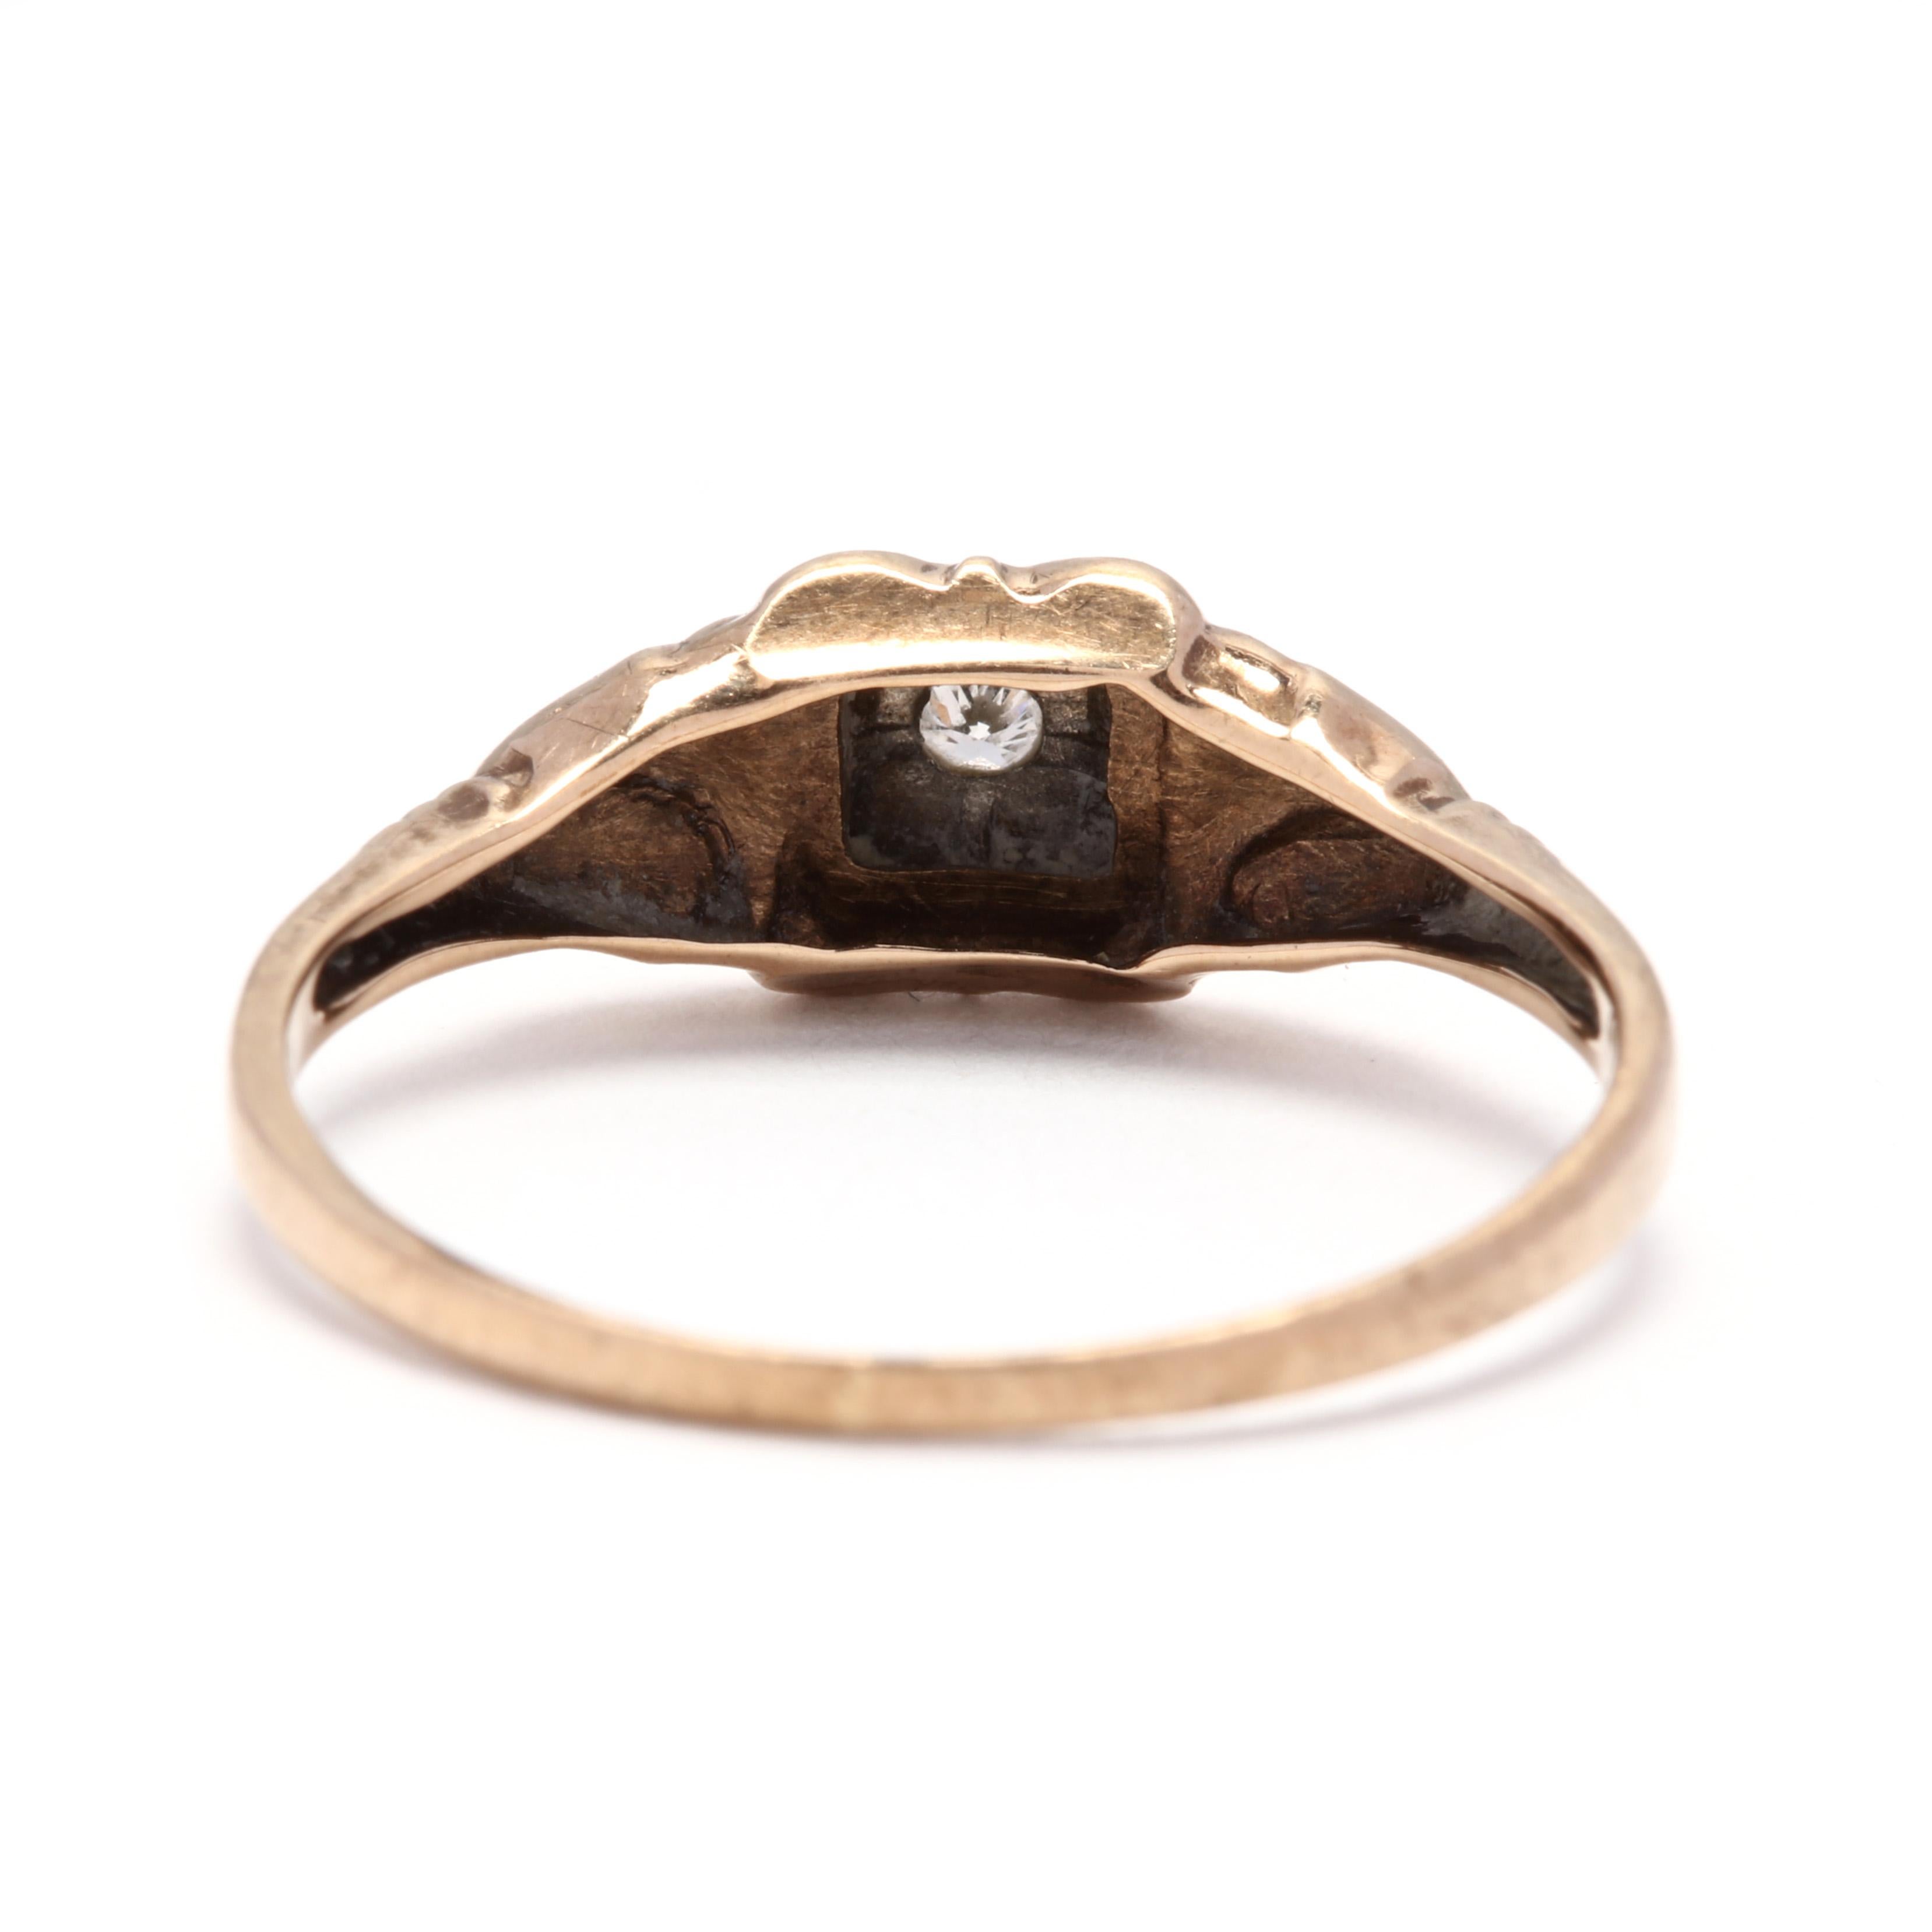 Retro 1950s 10 Karat Yellow and White Gold Diamond Engagement Ring